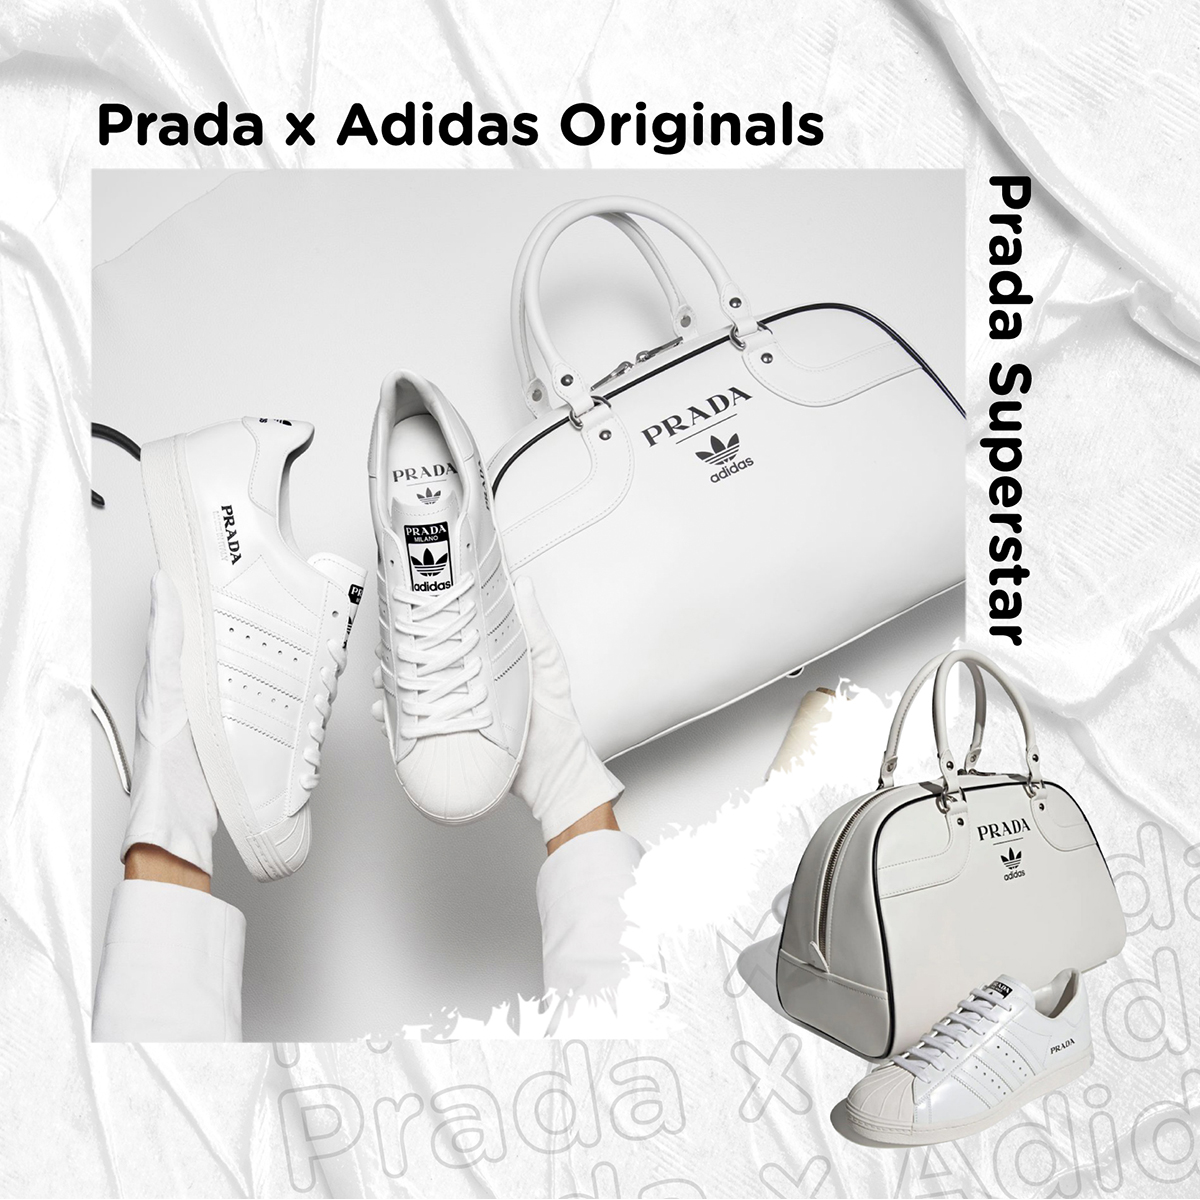 Prada x Adidas Originals - Prada Superstar 